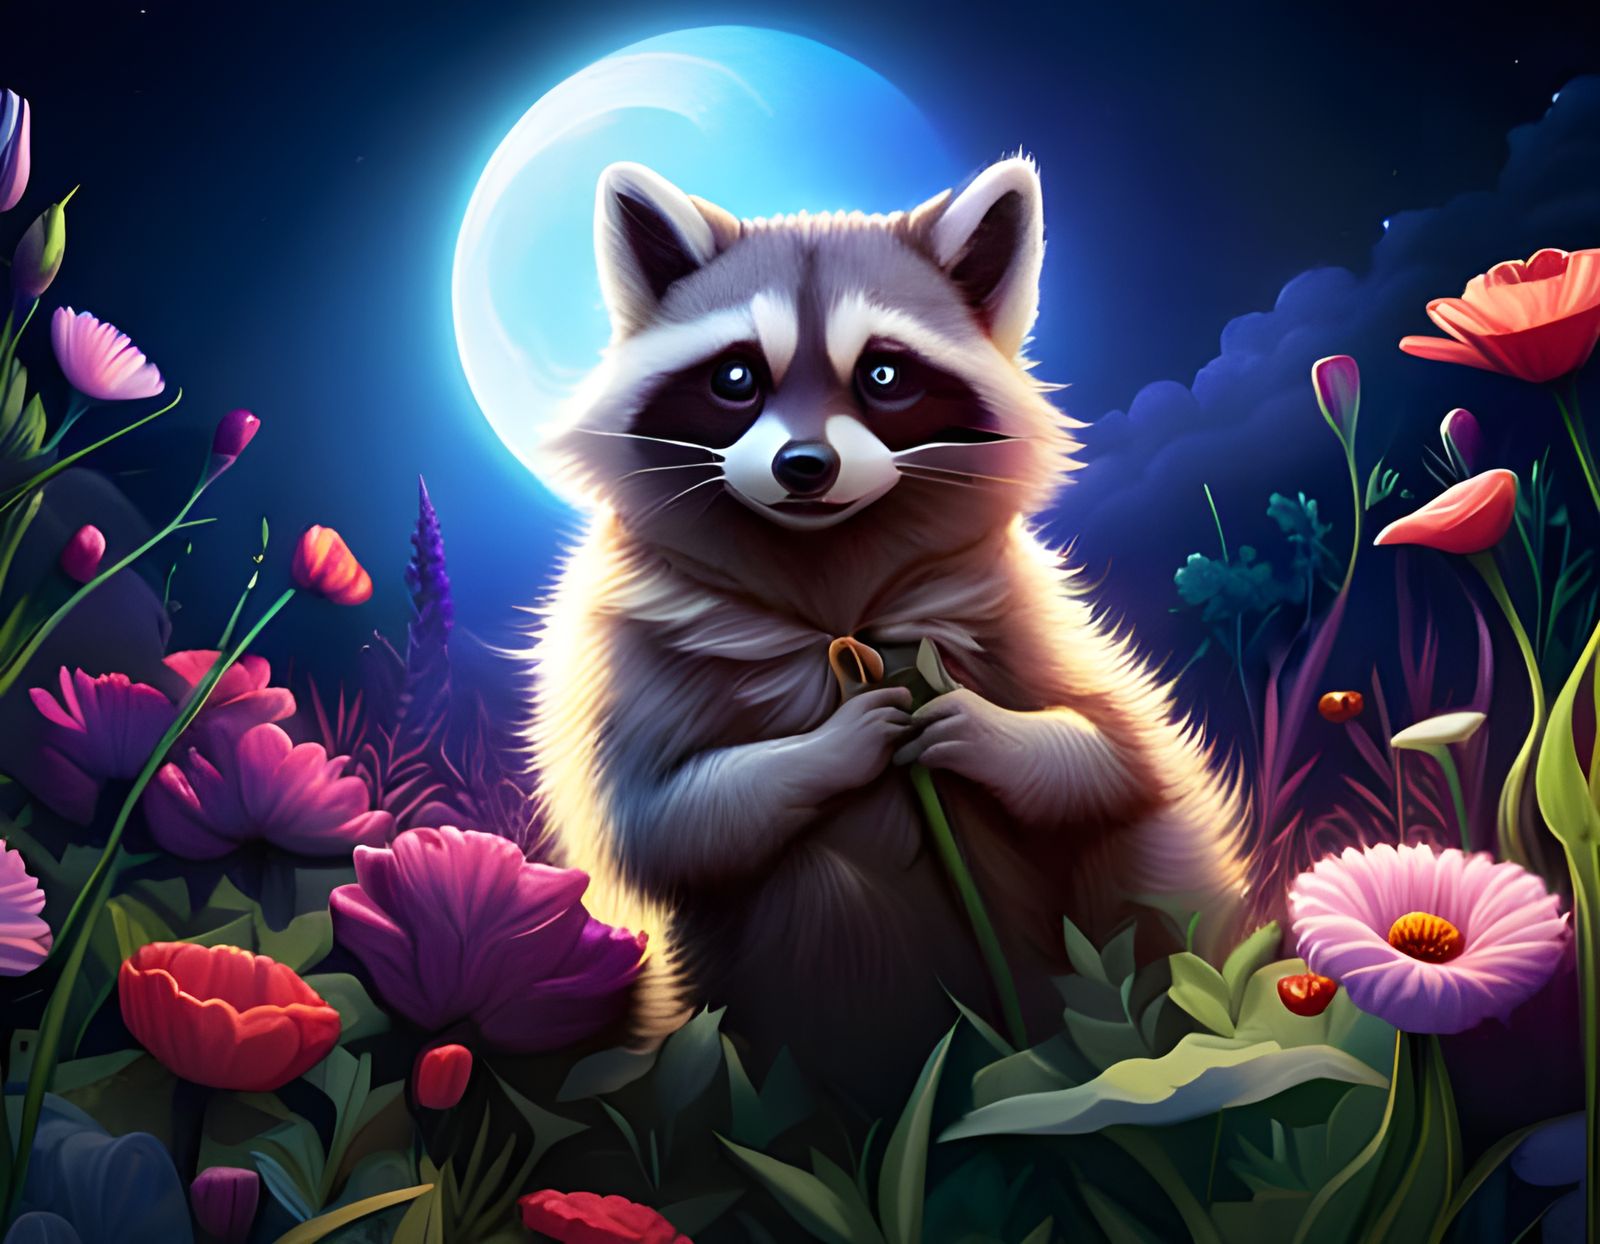 145-Cute Raccoon in a flower field in the night-2895